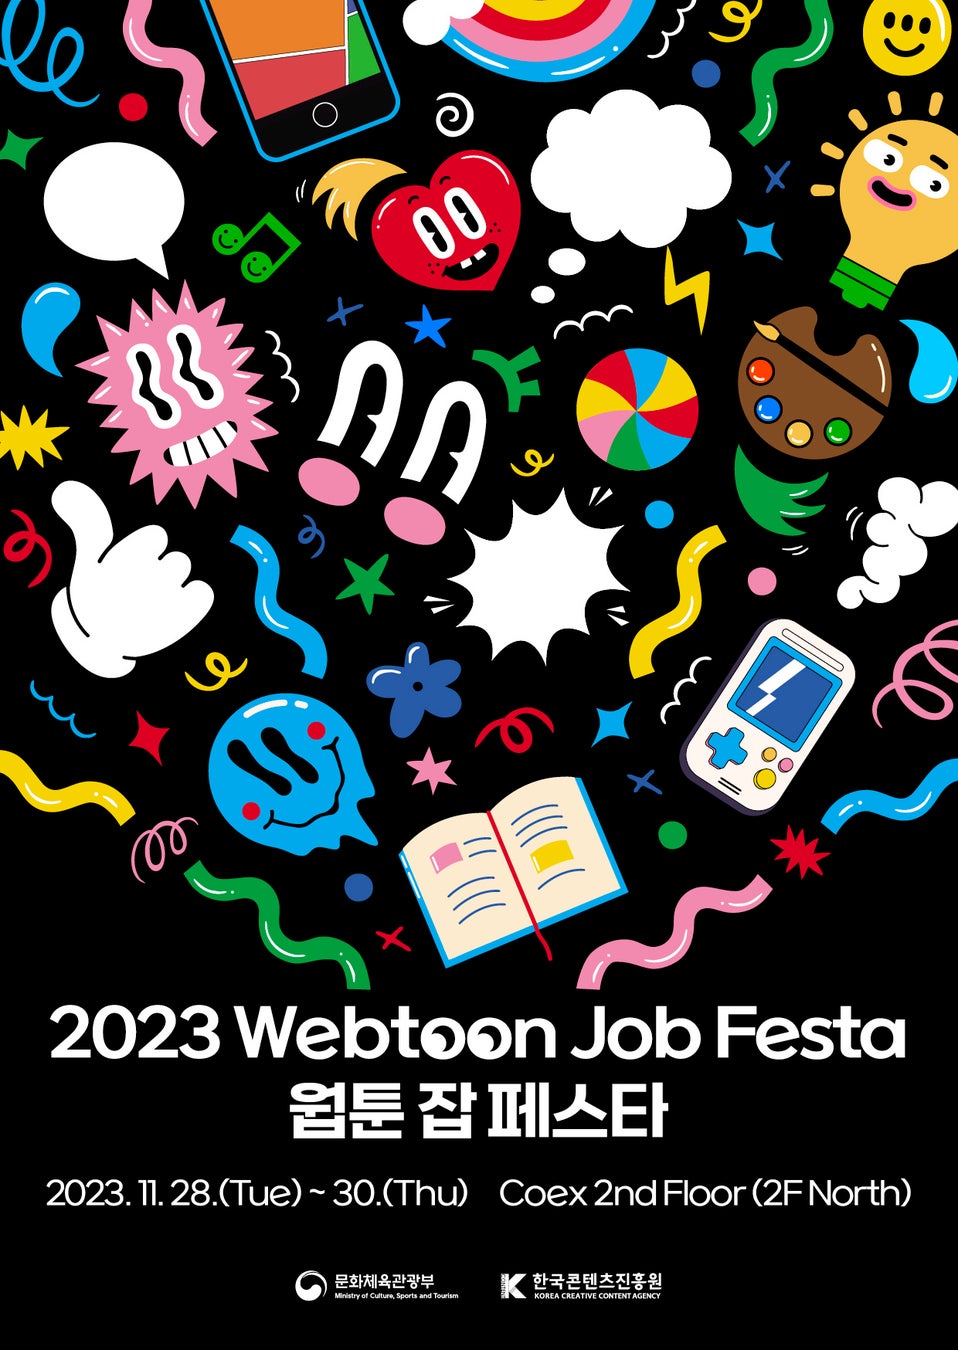 【参加費無料】11/28〜30 韓国ソウルで開催の「2023 Webtoon Job Festa」に日本企業向けの募集窓口を設置、本日募集スタート！＜日本からオンライン参加も可能＞